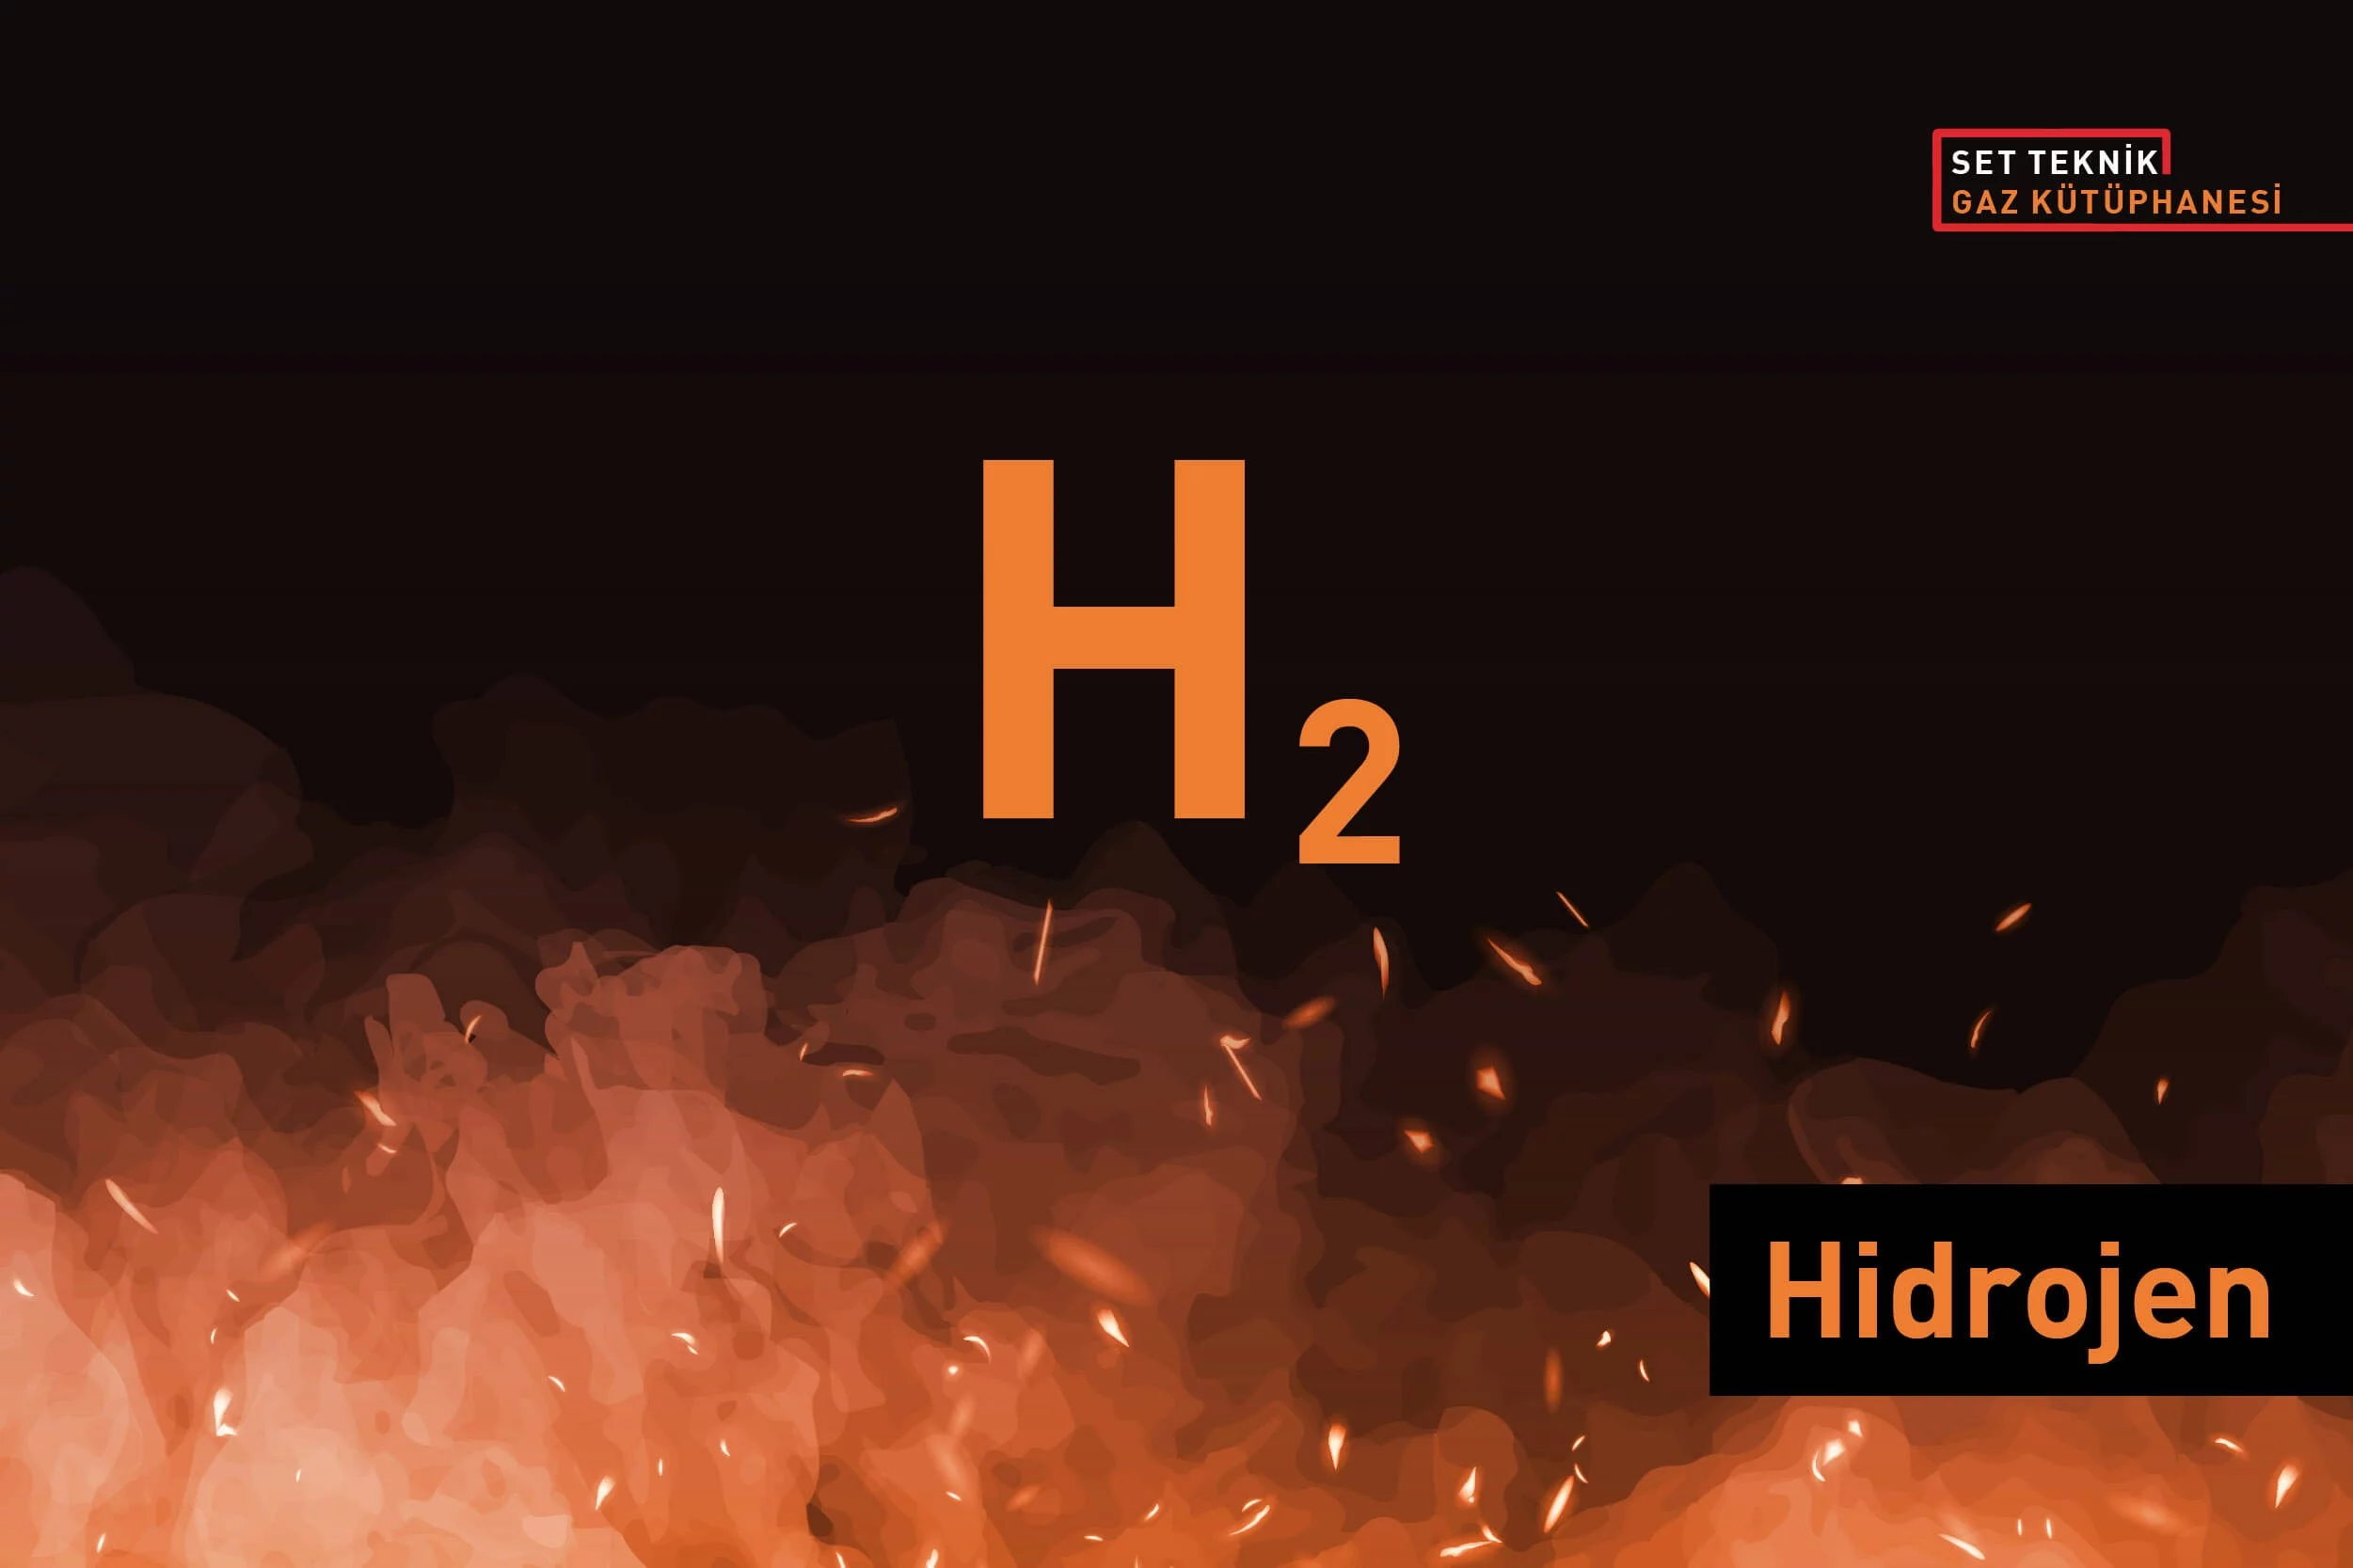 Hidrojen (H2) Gazının Özellikleri Nelerdir ve Nasıl Tespit Edilir?